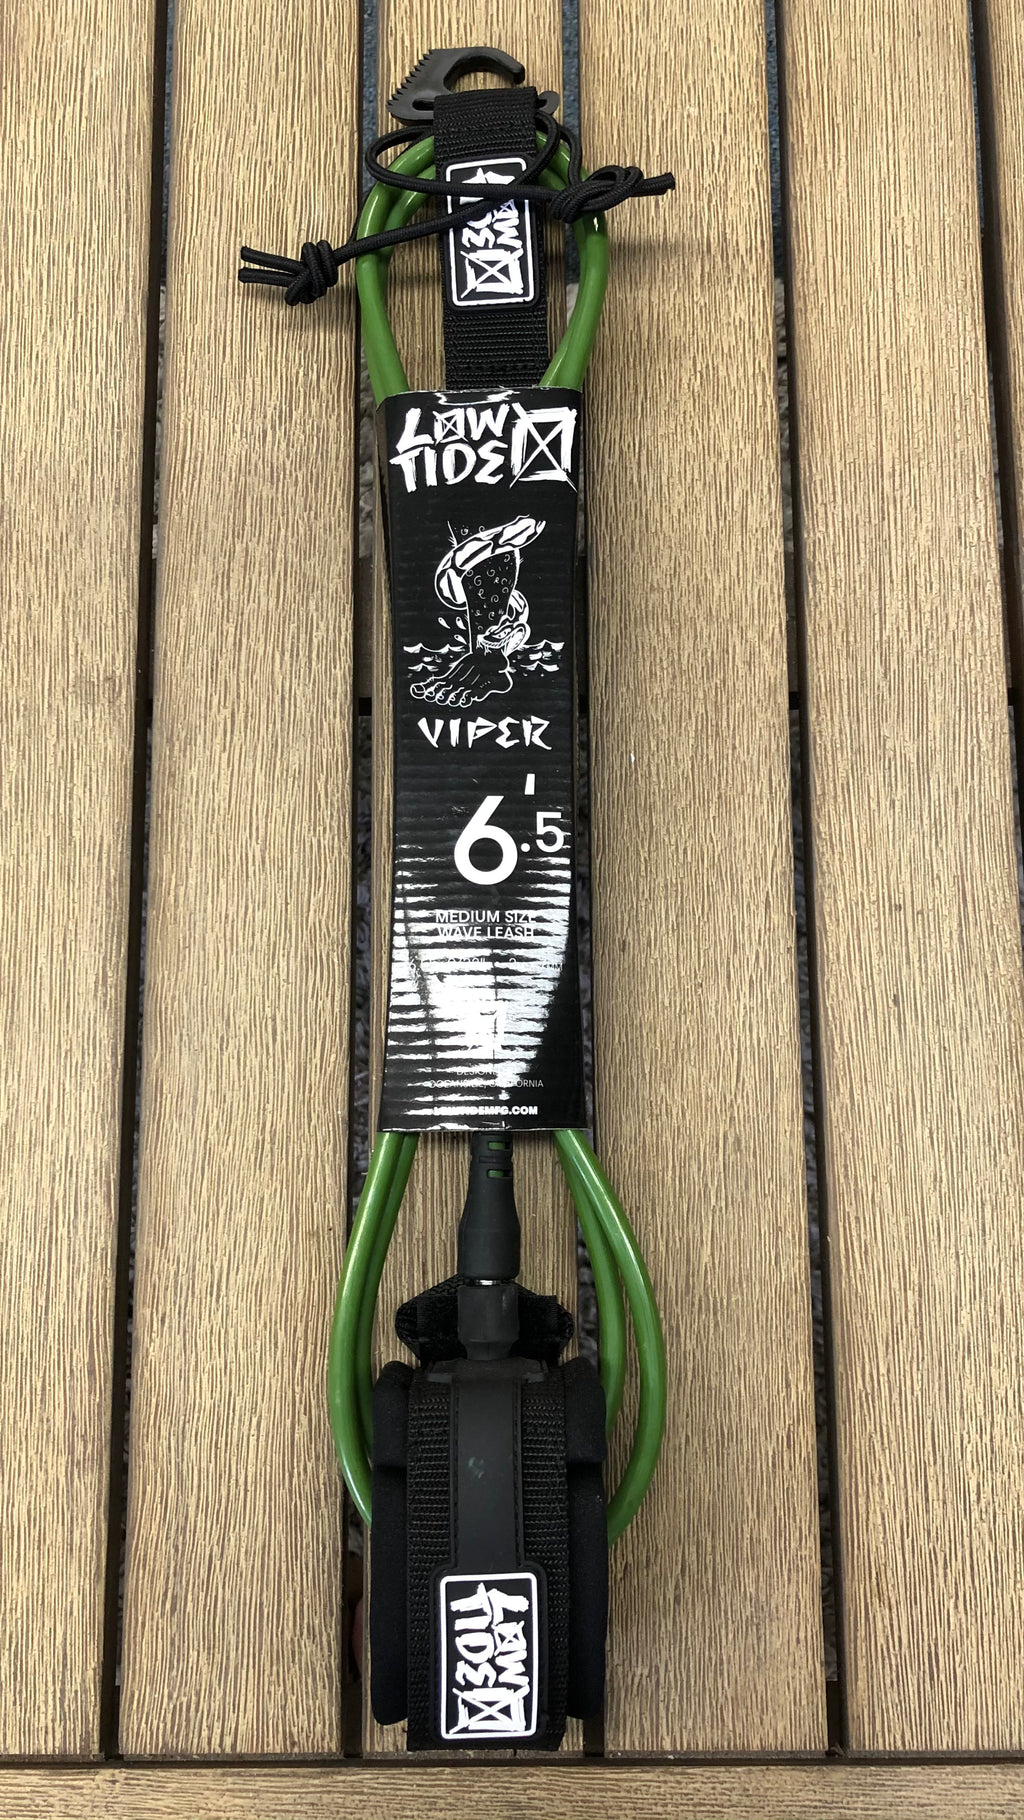 Viper 6.5’ 9/32” leash